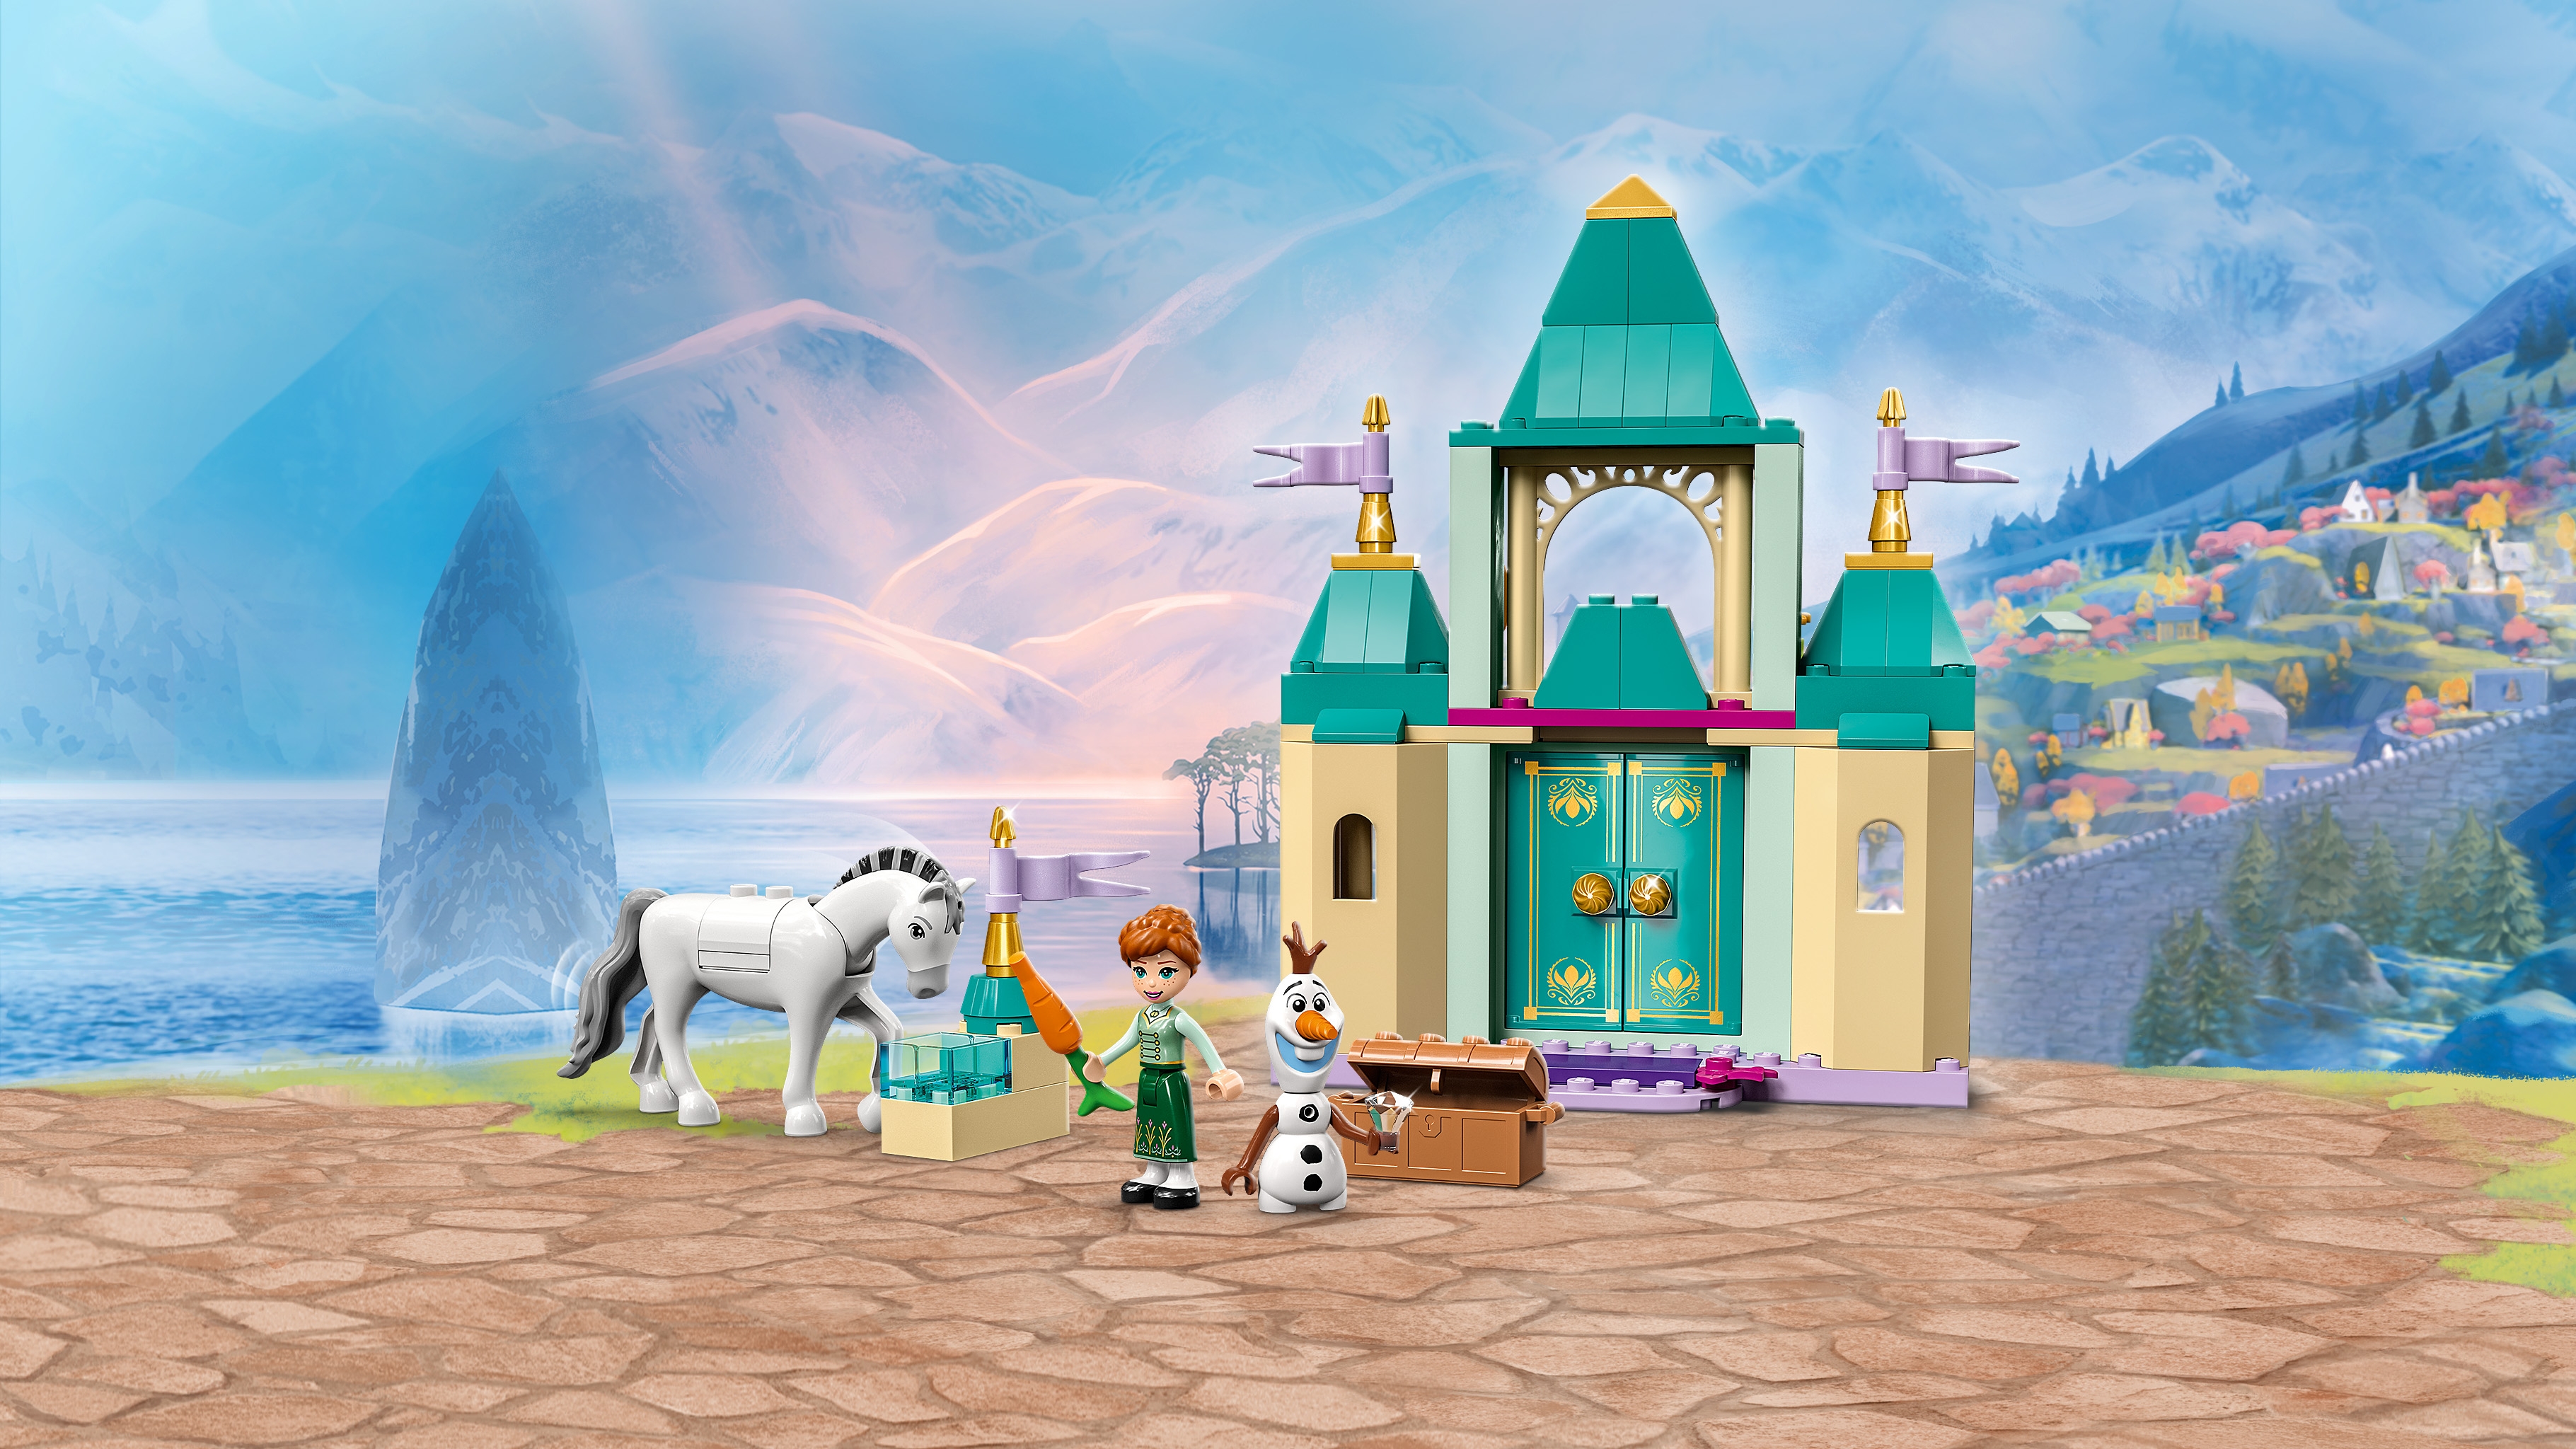 LEGO Disney Castillo de Juegos de Anna y Olaf 43204